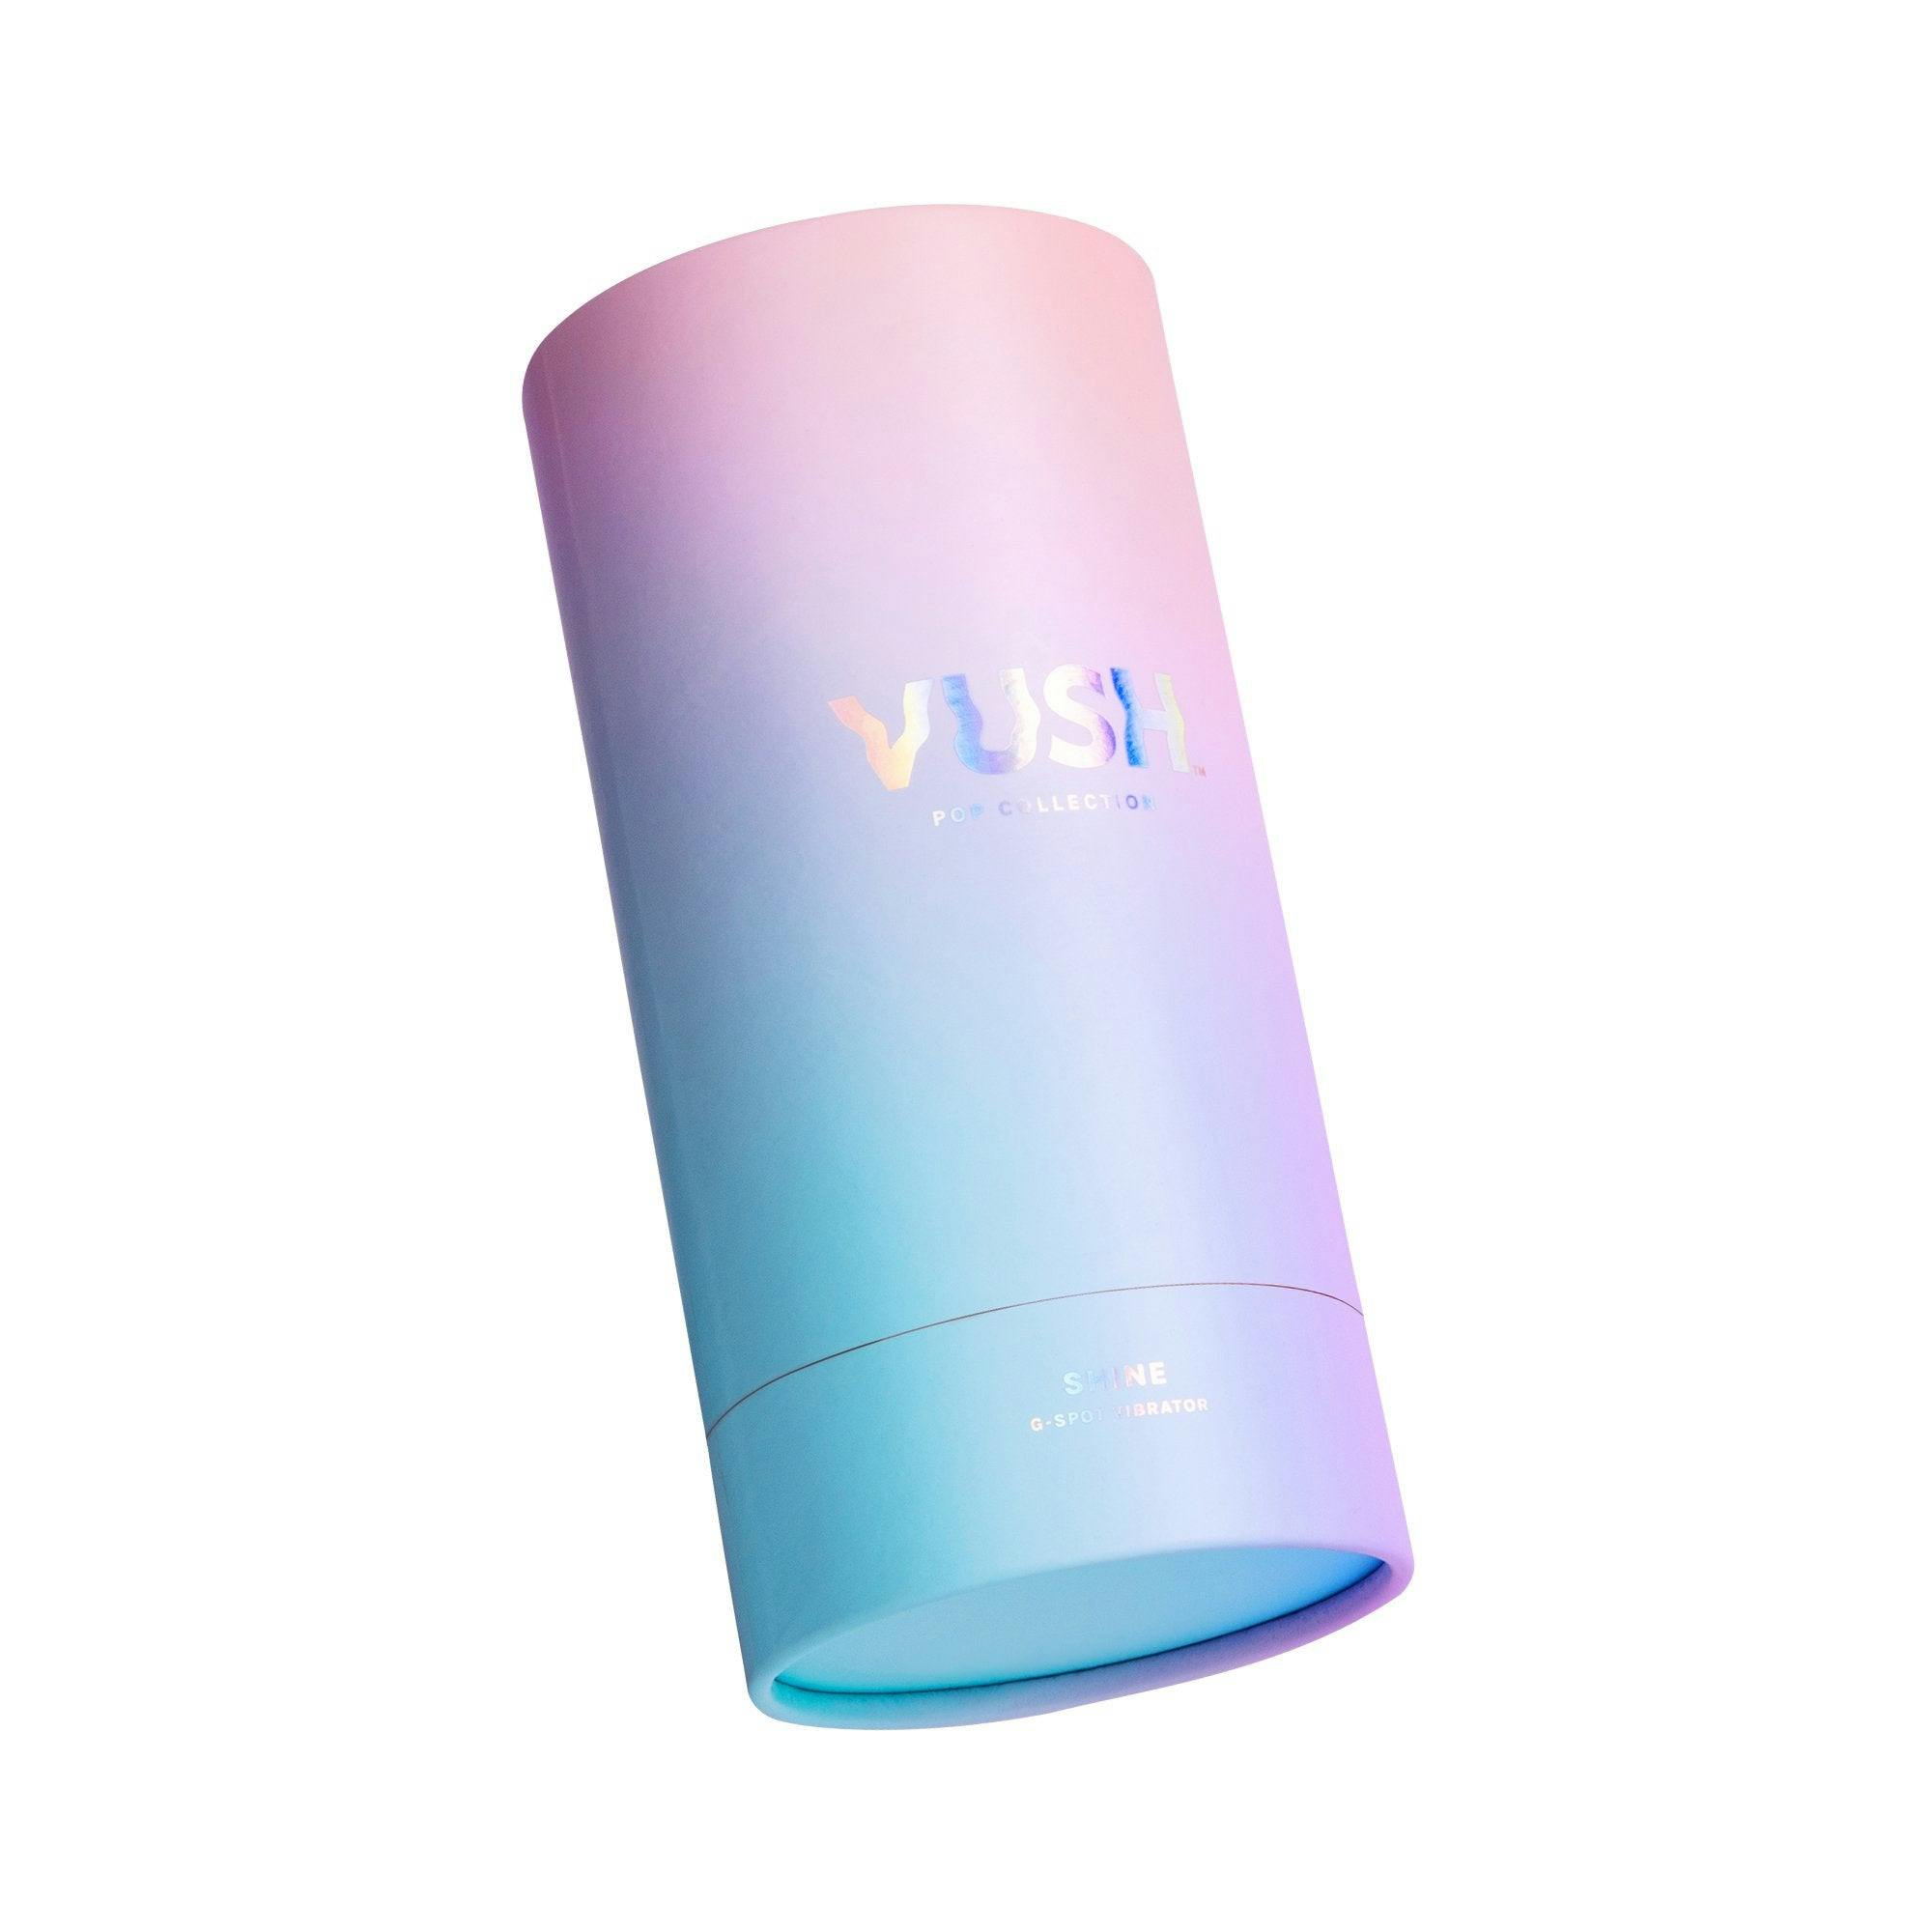 Vush Shine G-Spot Vibrator